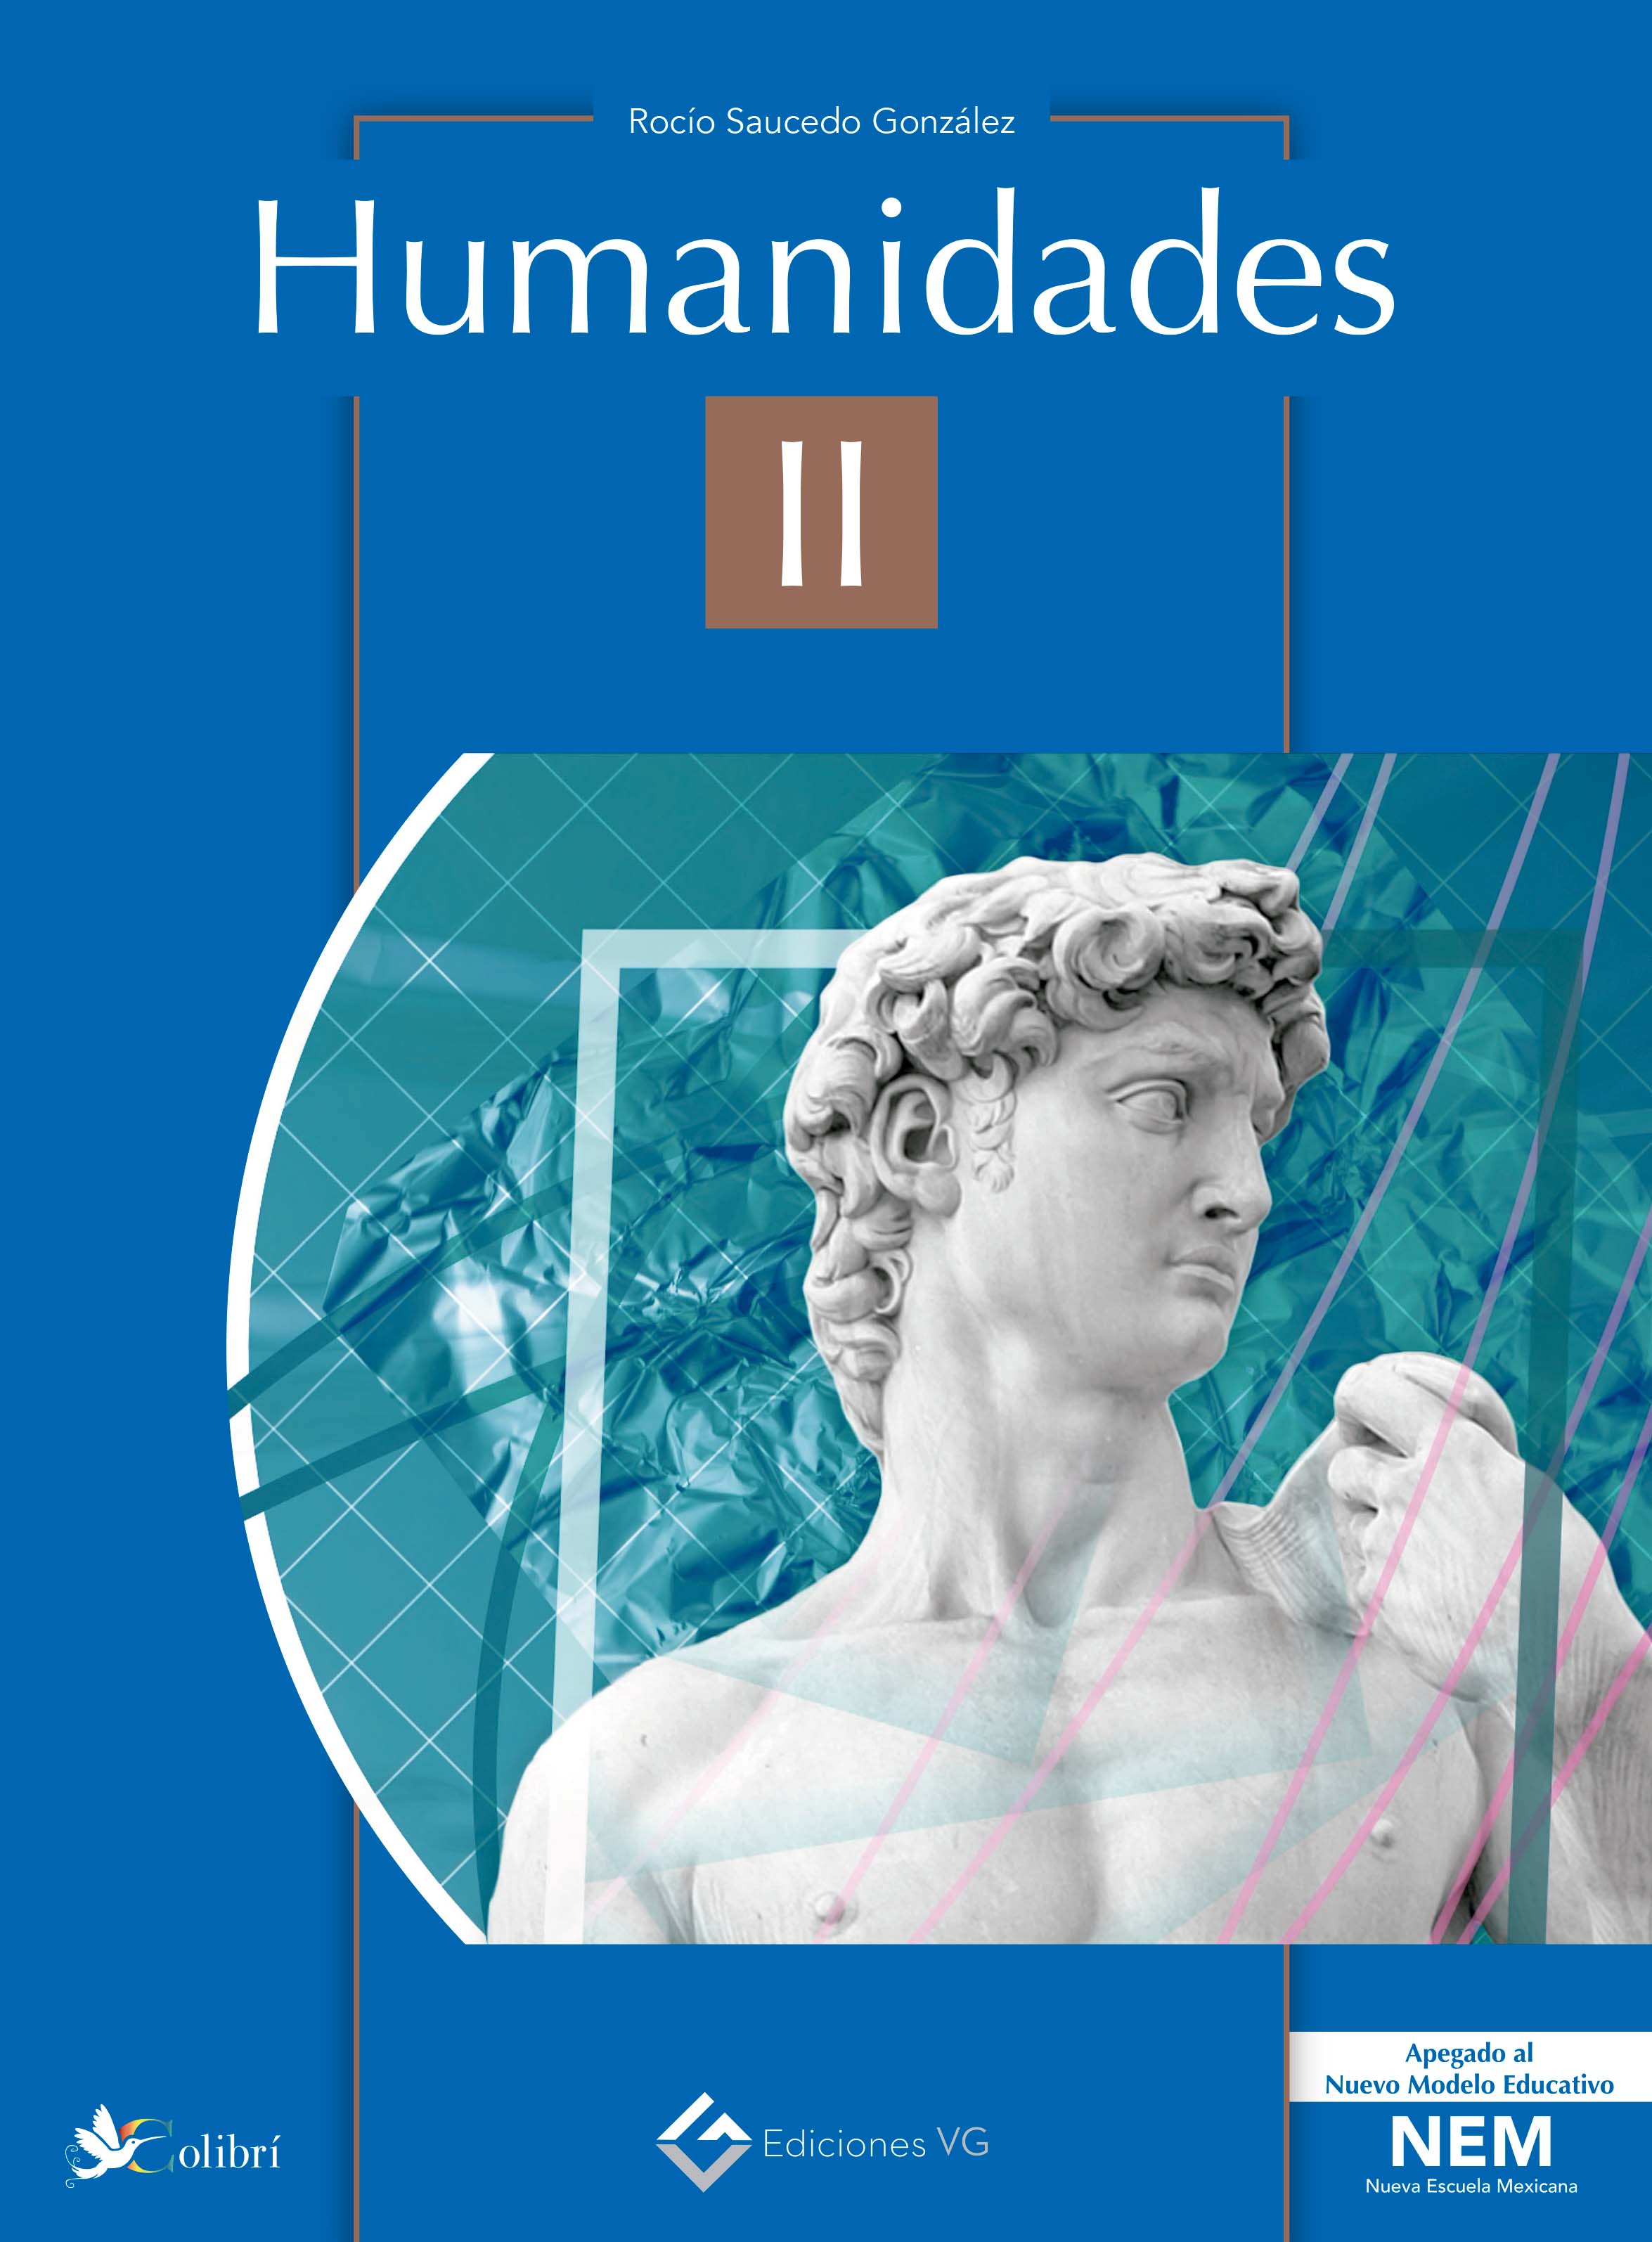 Course Image Humanidades II